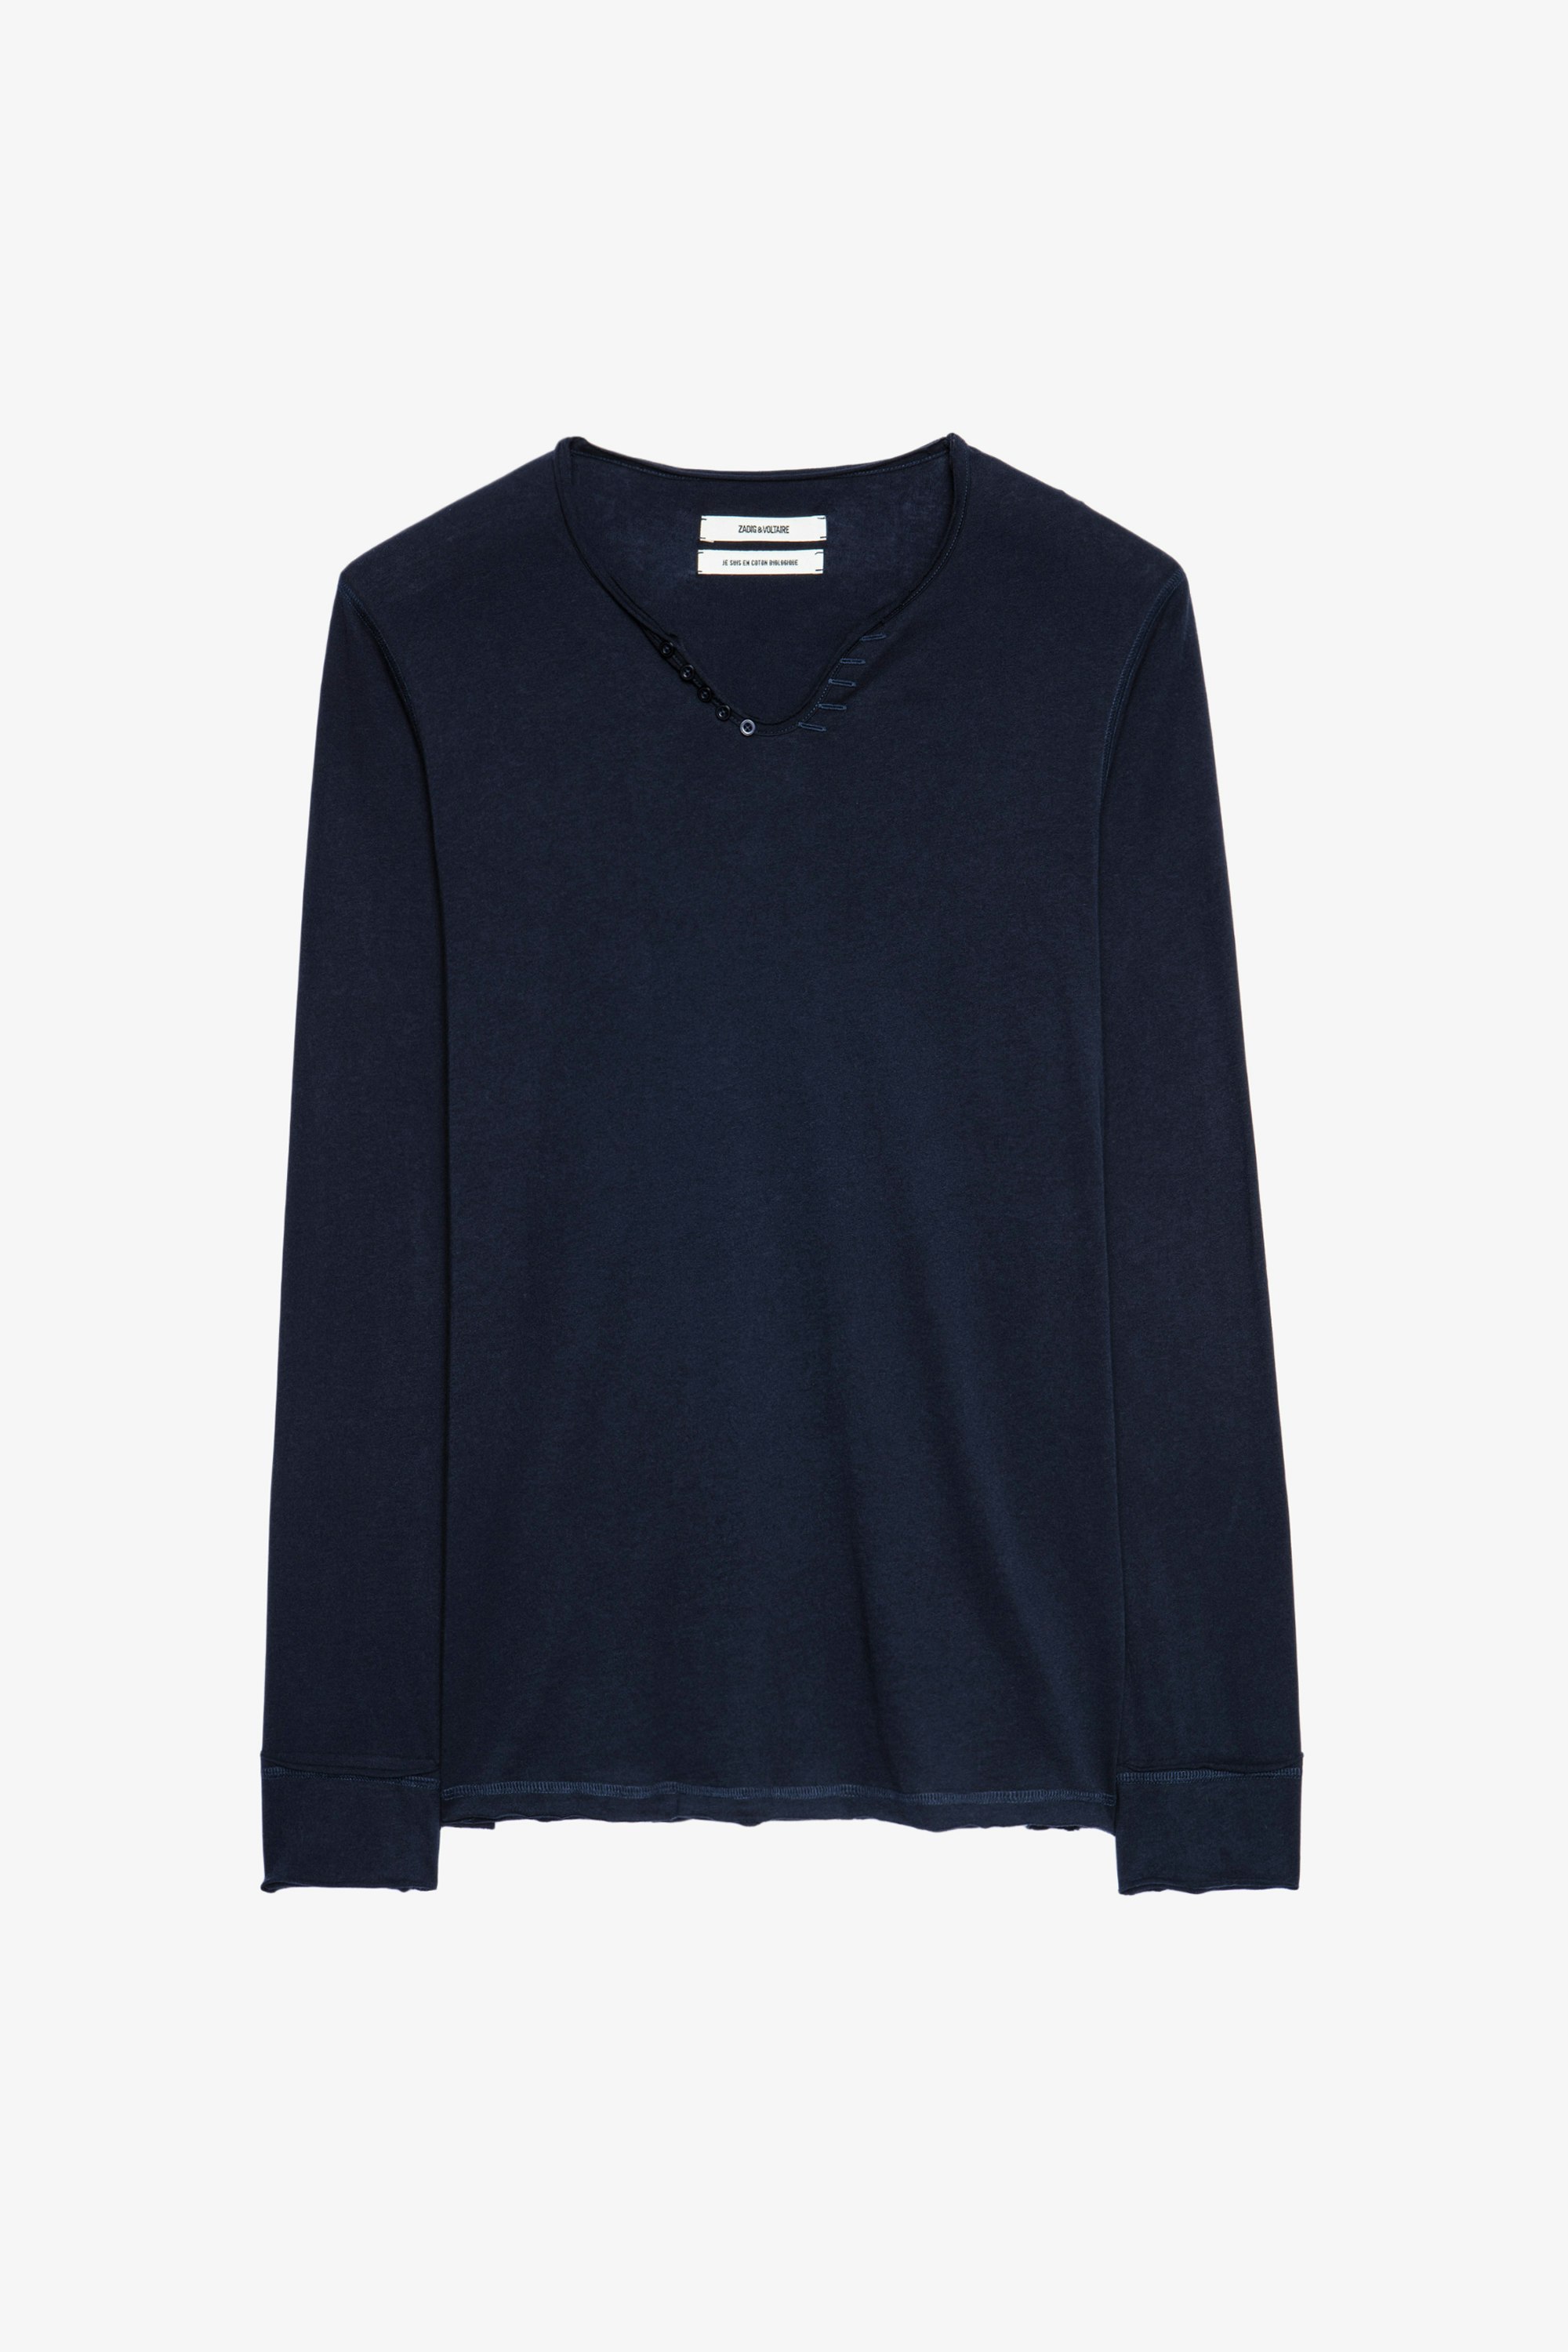 T-shirt Monastir Blaues Herren-T-shirt aus Baumwolle mit Henley-Ausschnitt